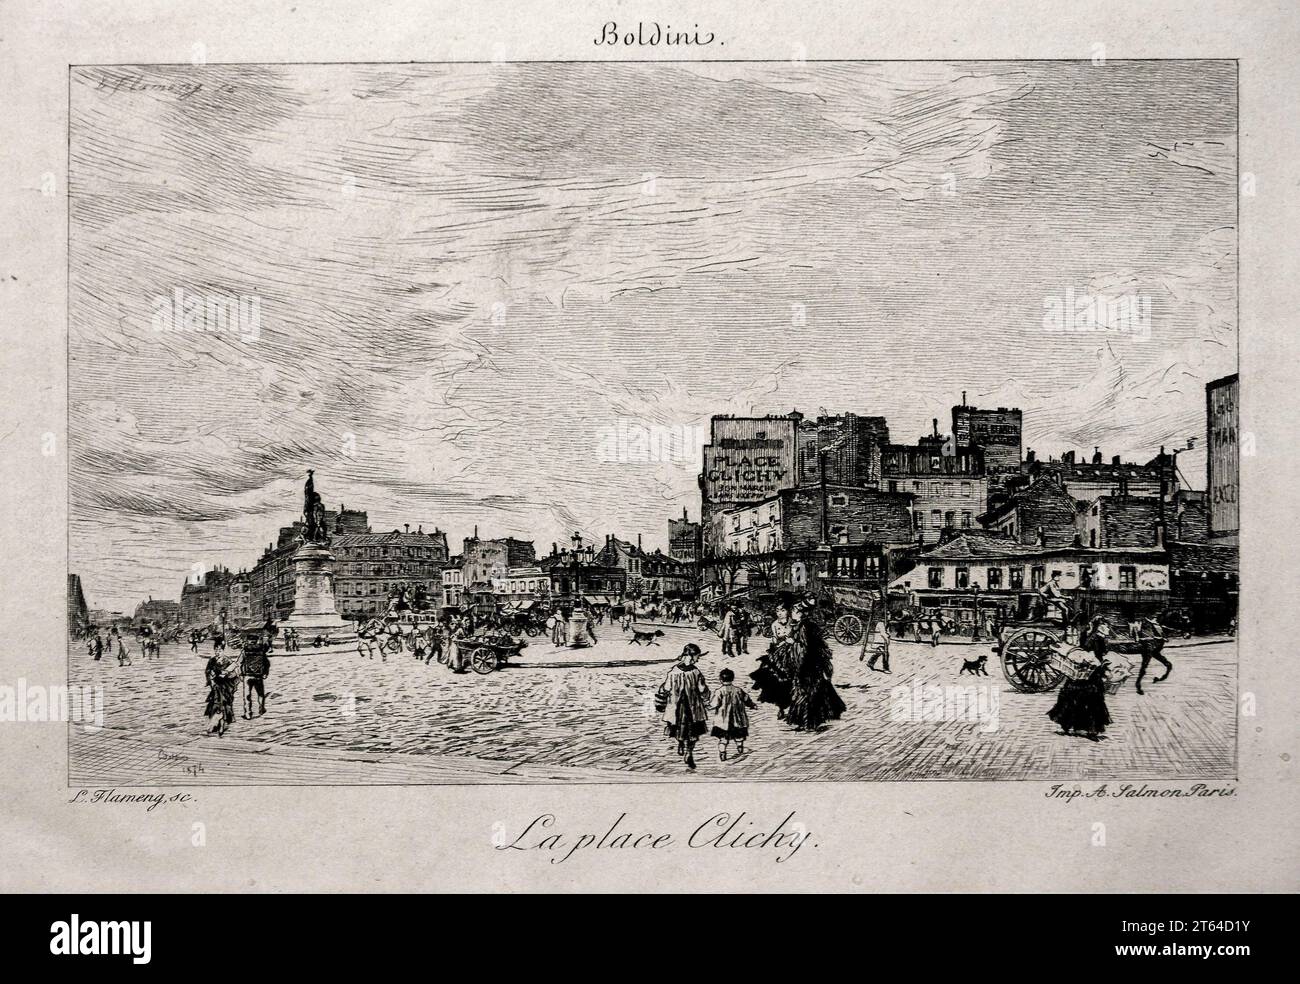 La Place Clichy - acquaforte - Giovanni Boldini - 1874 - collezione privata Stockfoto